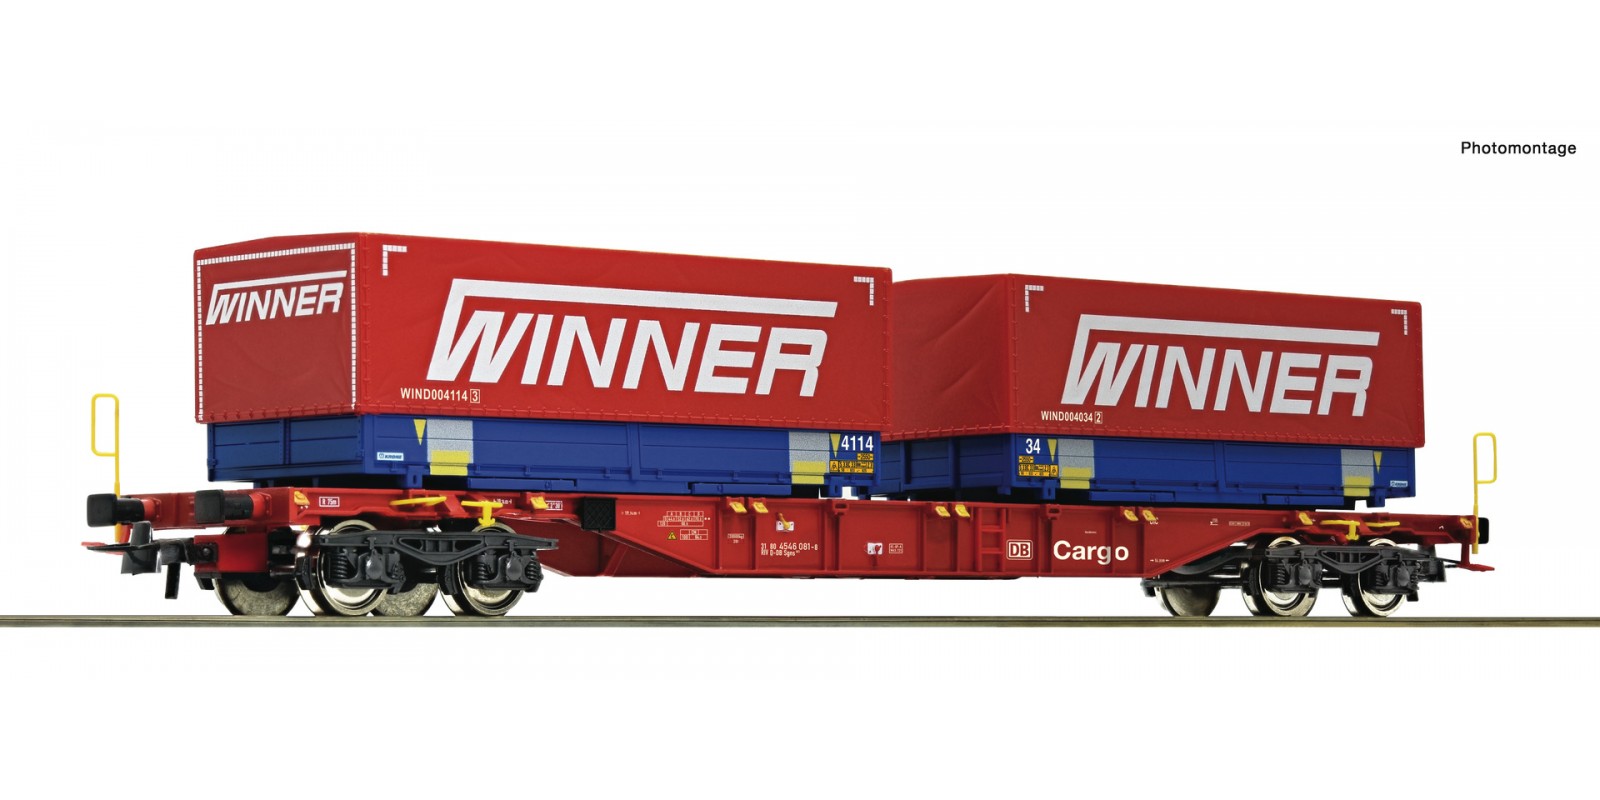 RO75893 Container carrier wagon + Winner Wechselpritschen #7 Display 75886